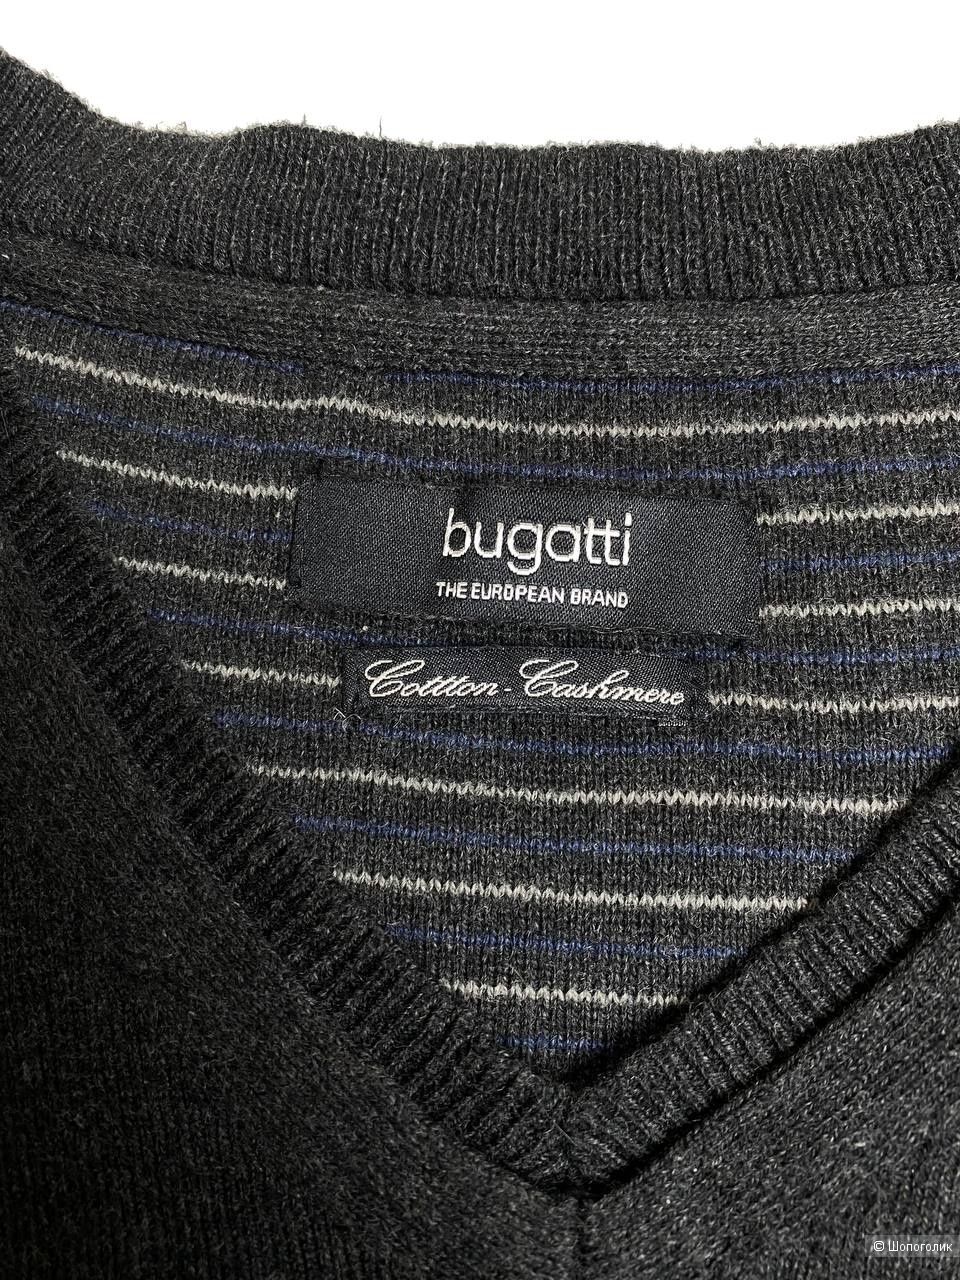 Пуловер Buggati, есть кашемир, размер: L